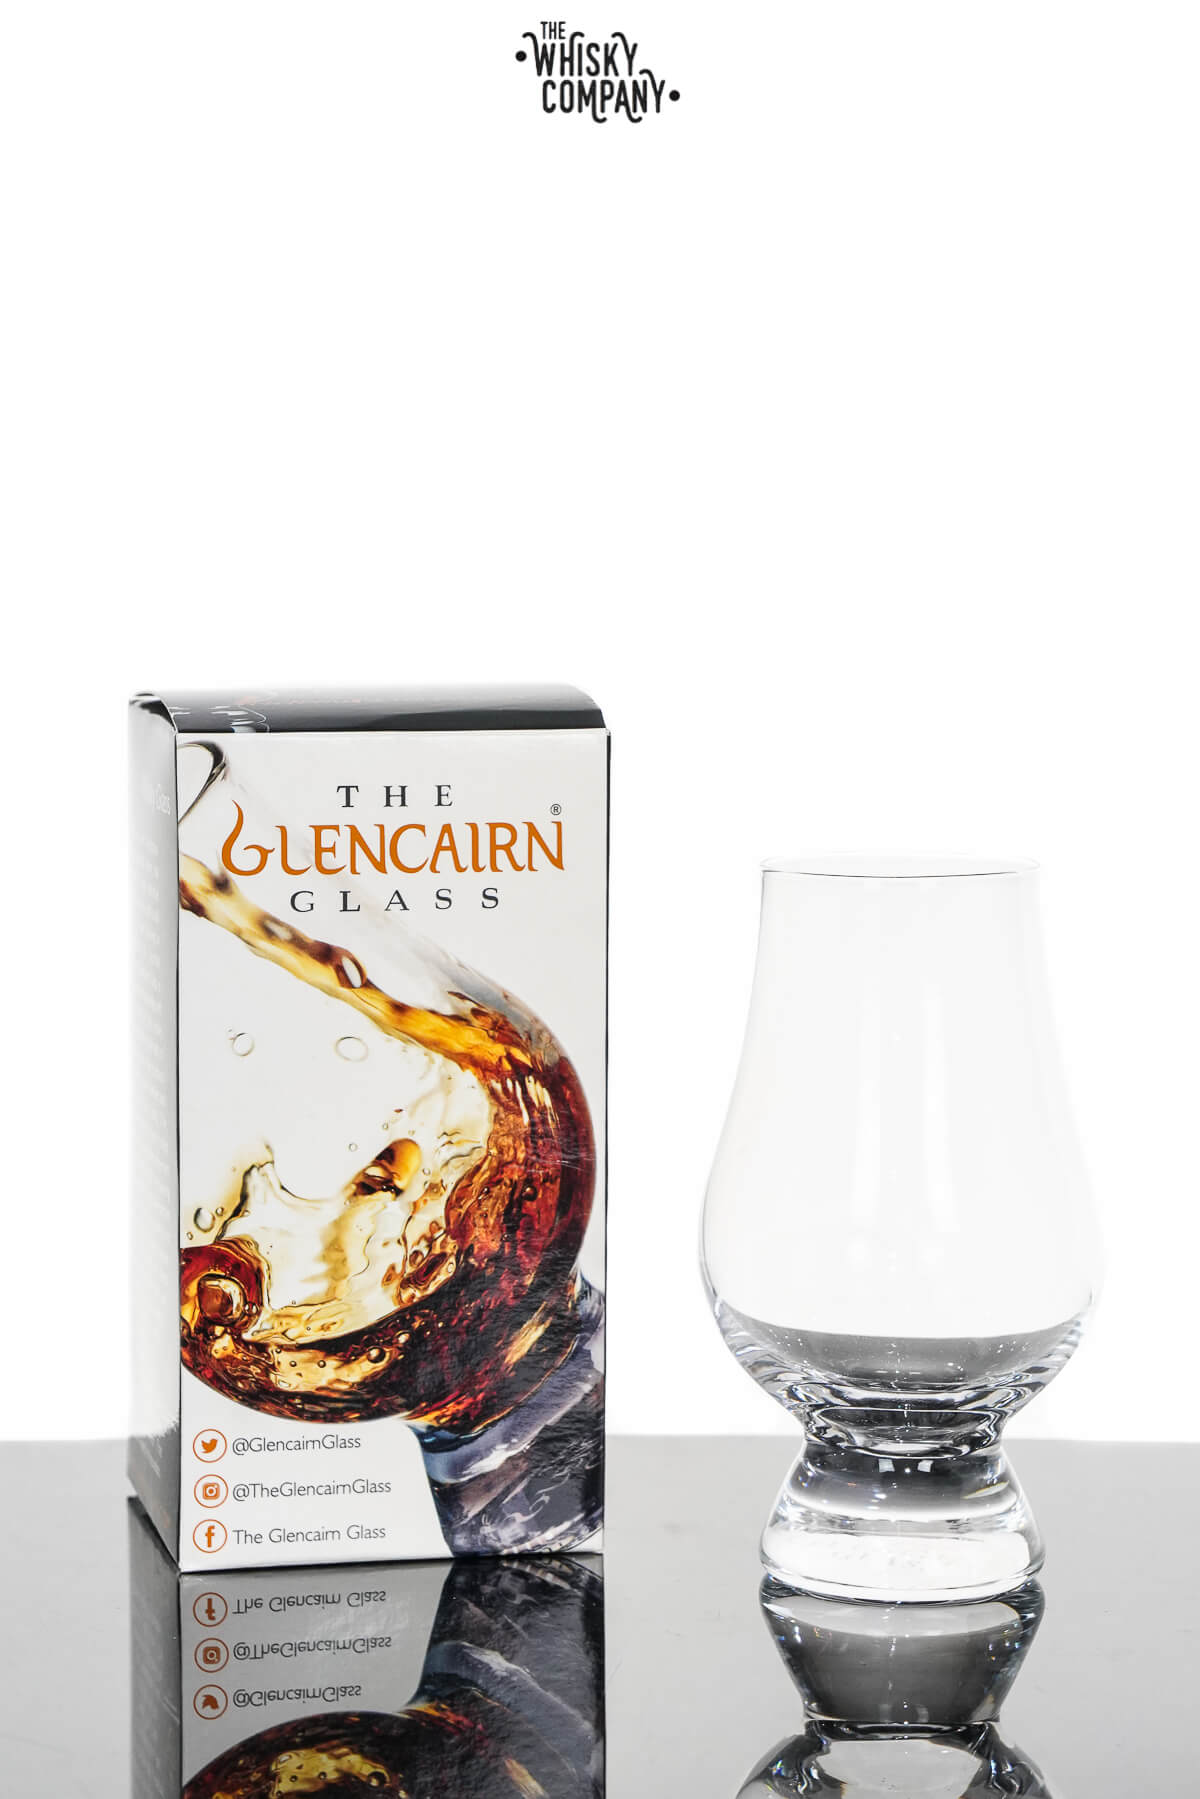 Glenfiddich Glencairn Scotch Snifter Glass 